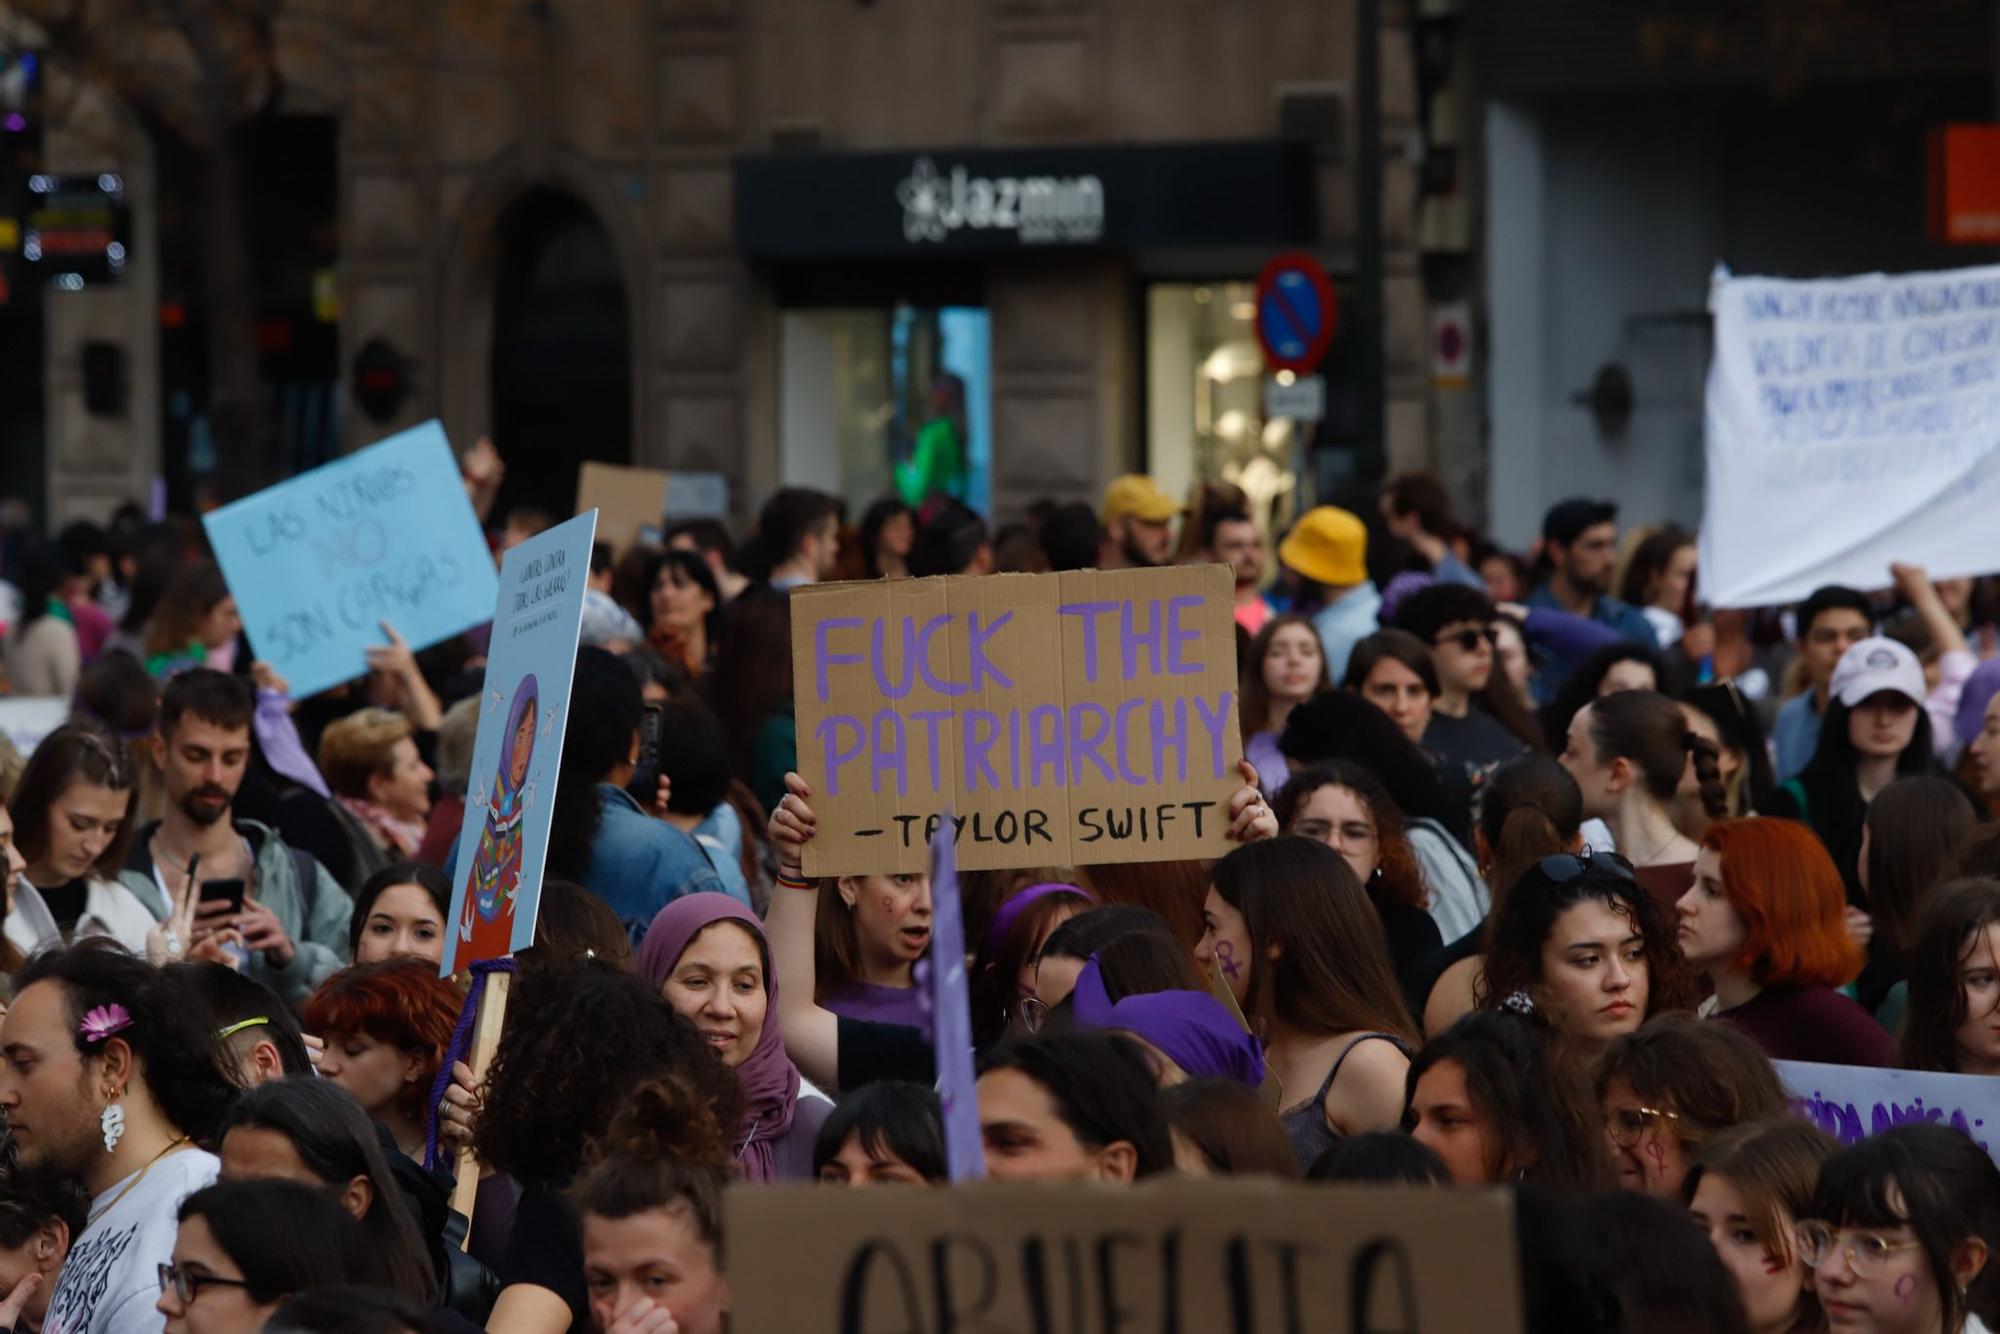 La manifestación de la Coordinadora Feminista de València para celebrar el 8 M